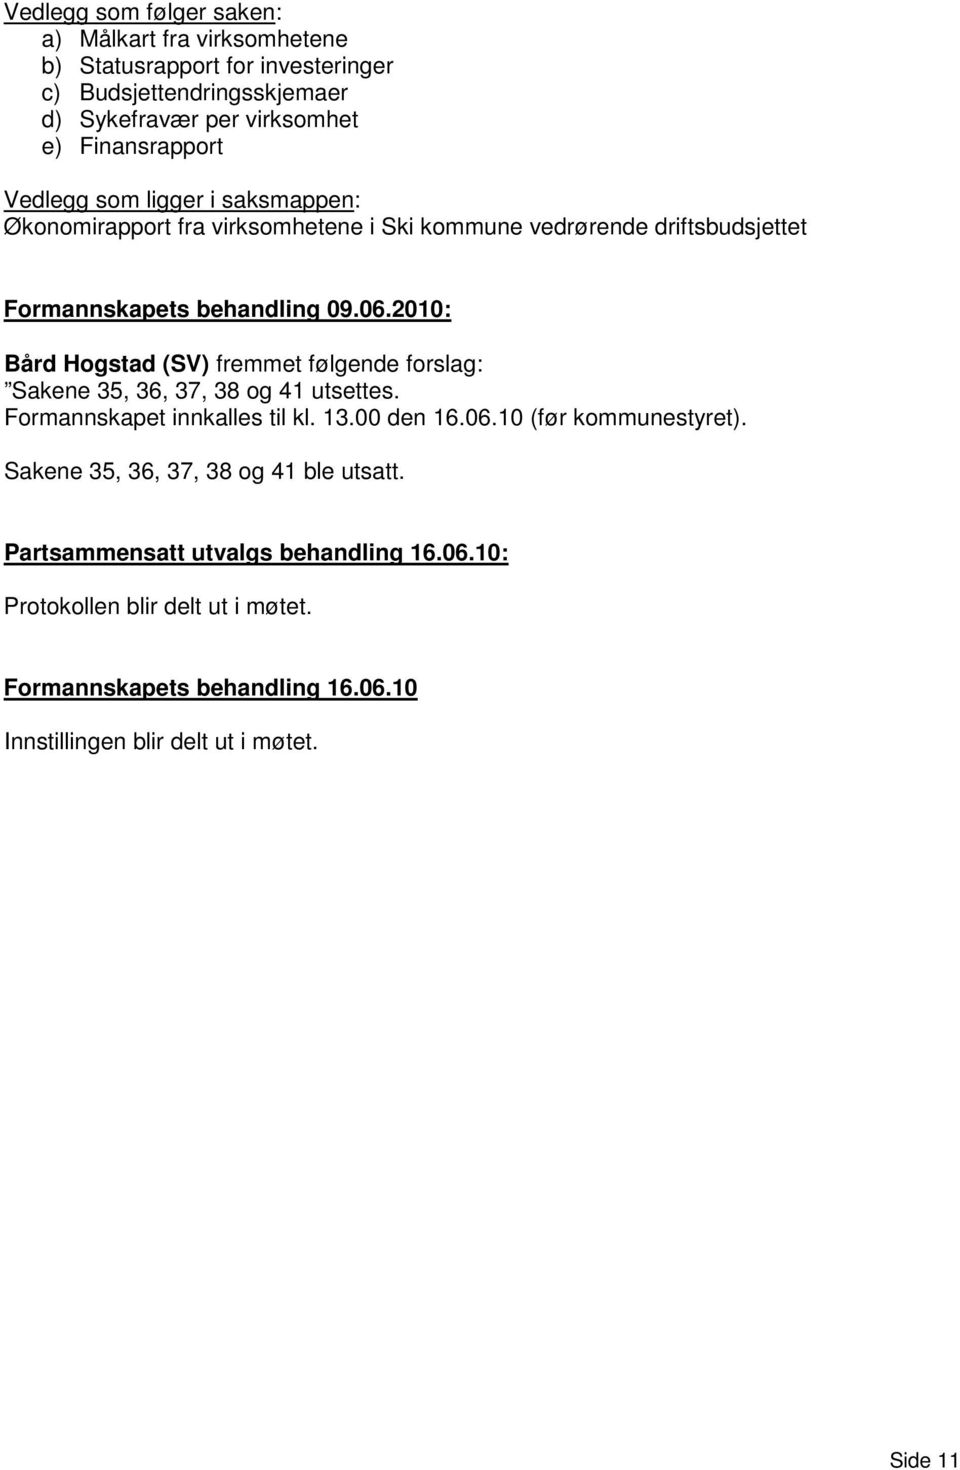 2010: Bård Hogstad (SV) fremmet følgende forslag: Sakene 35, 36, 37, 38 og 41 utsettes. Formannskapet innkalles til kl. 13.00 den 16.06.10 (før kommunestyret).